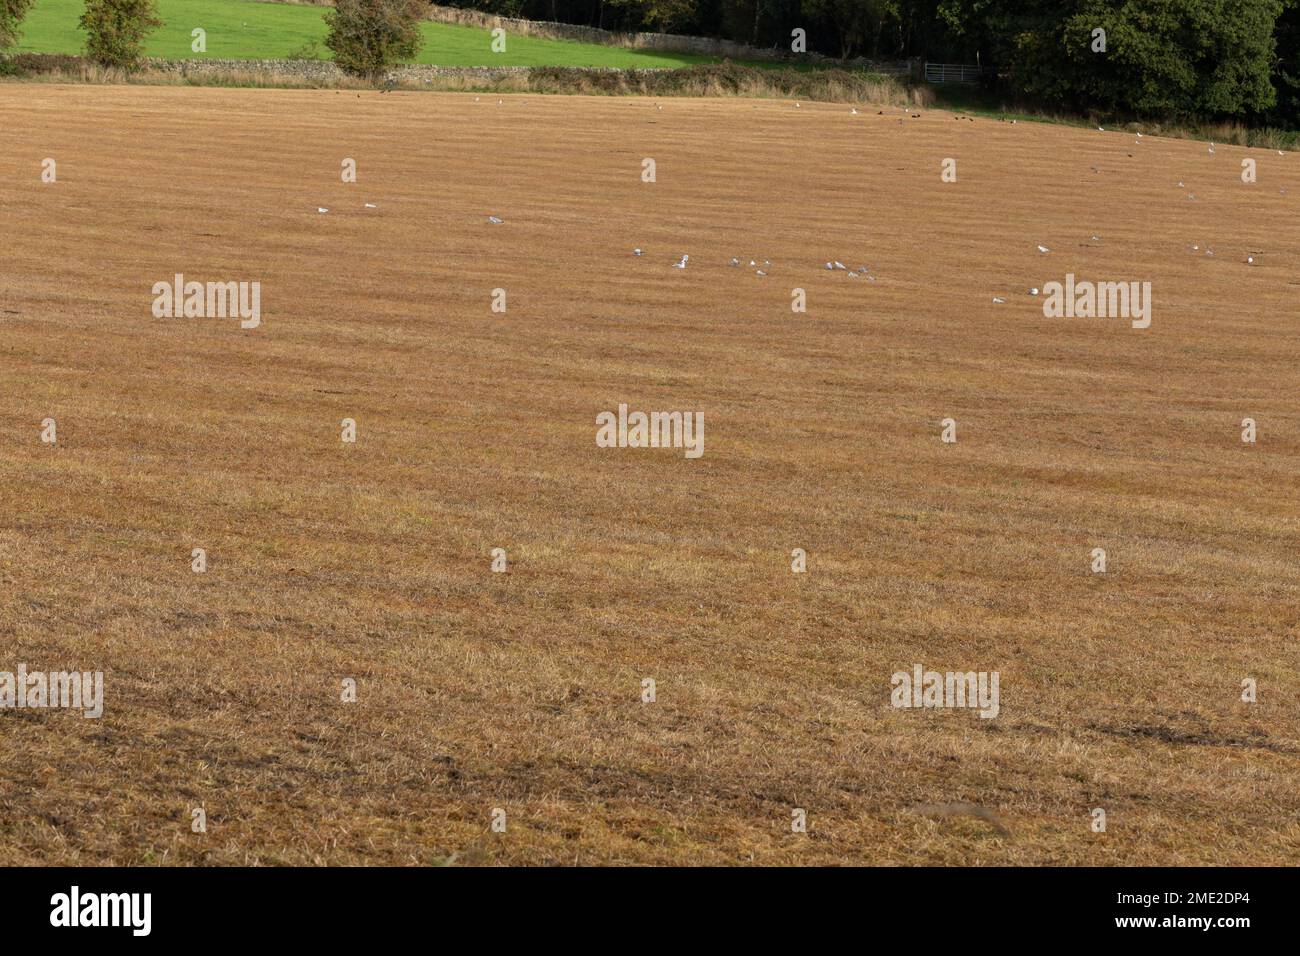 Un campo de pastoreo que ha sido tratado con herbicida (herbicida). La hierba se ha vuelto naranja después del tratamiento químico. Foto de stock